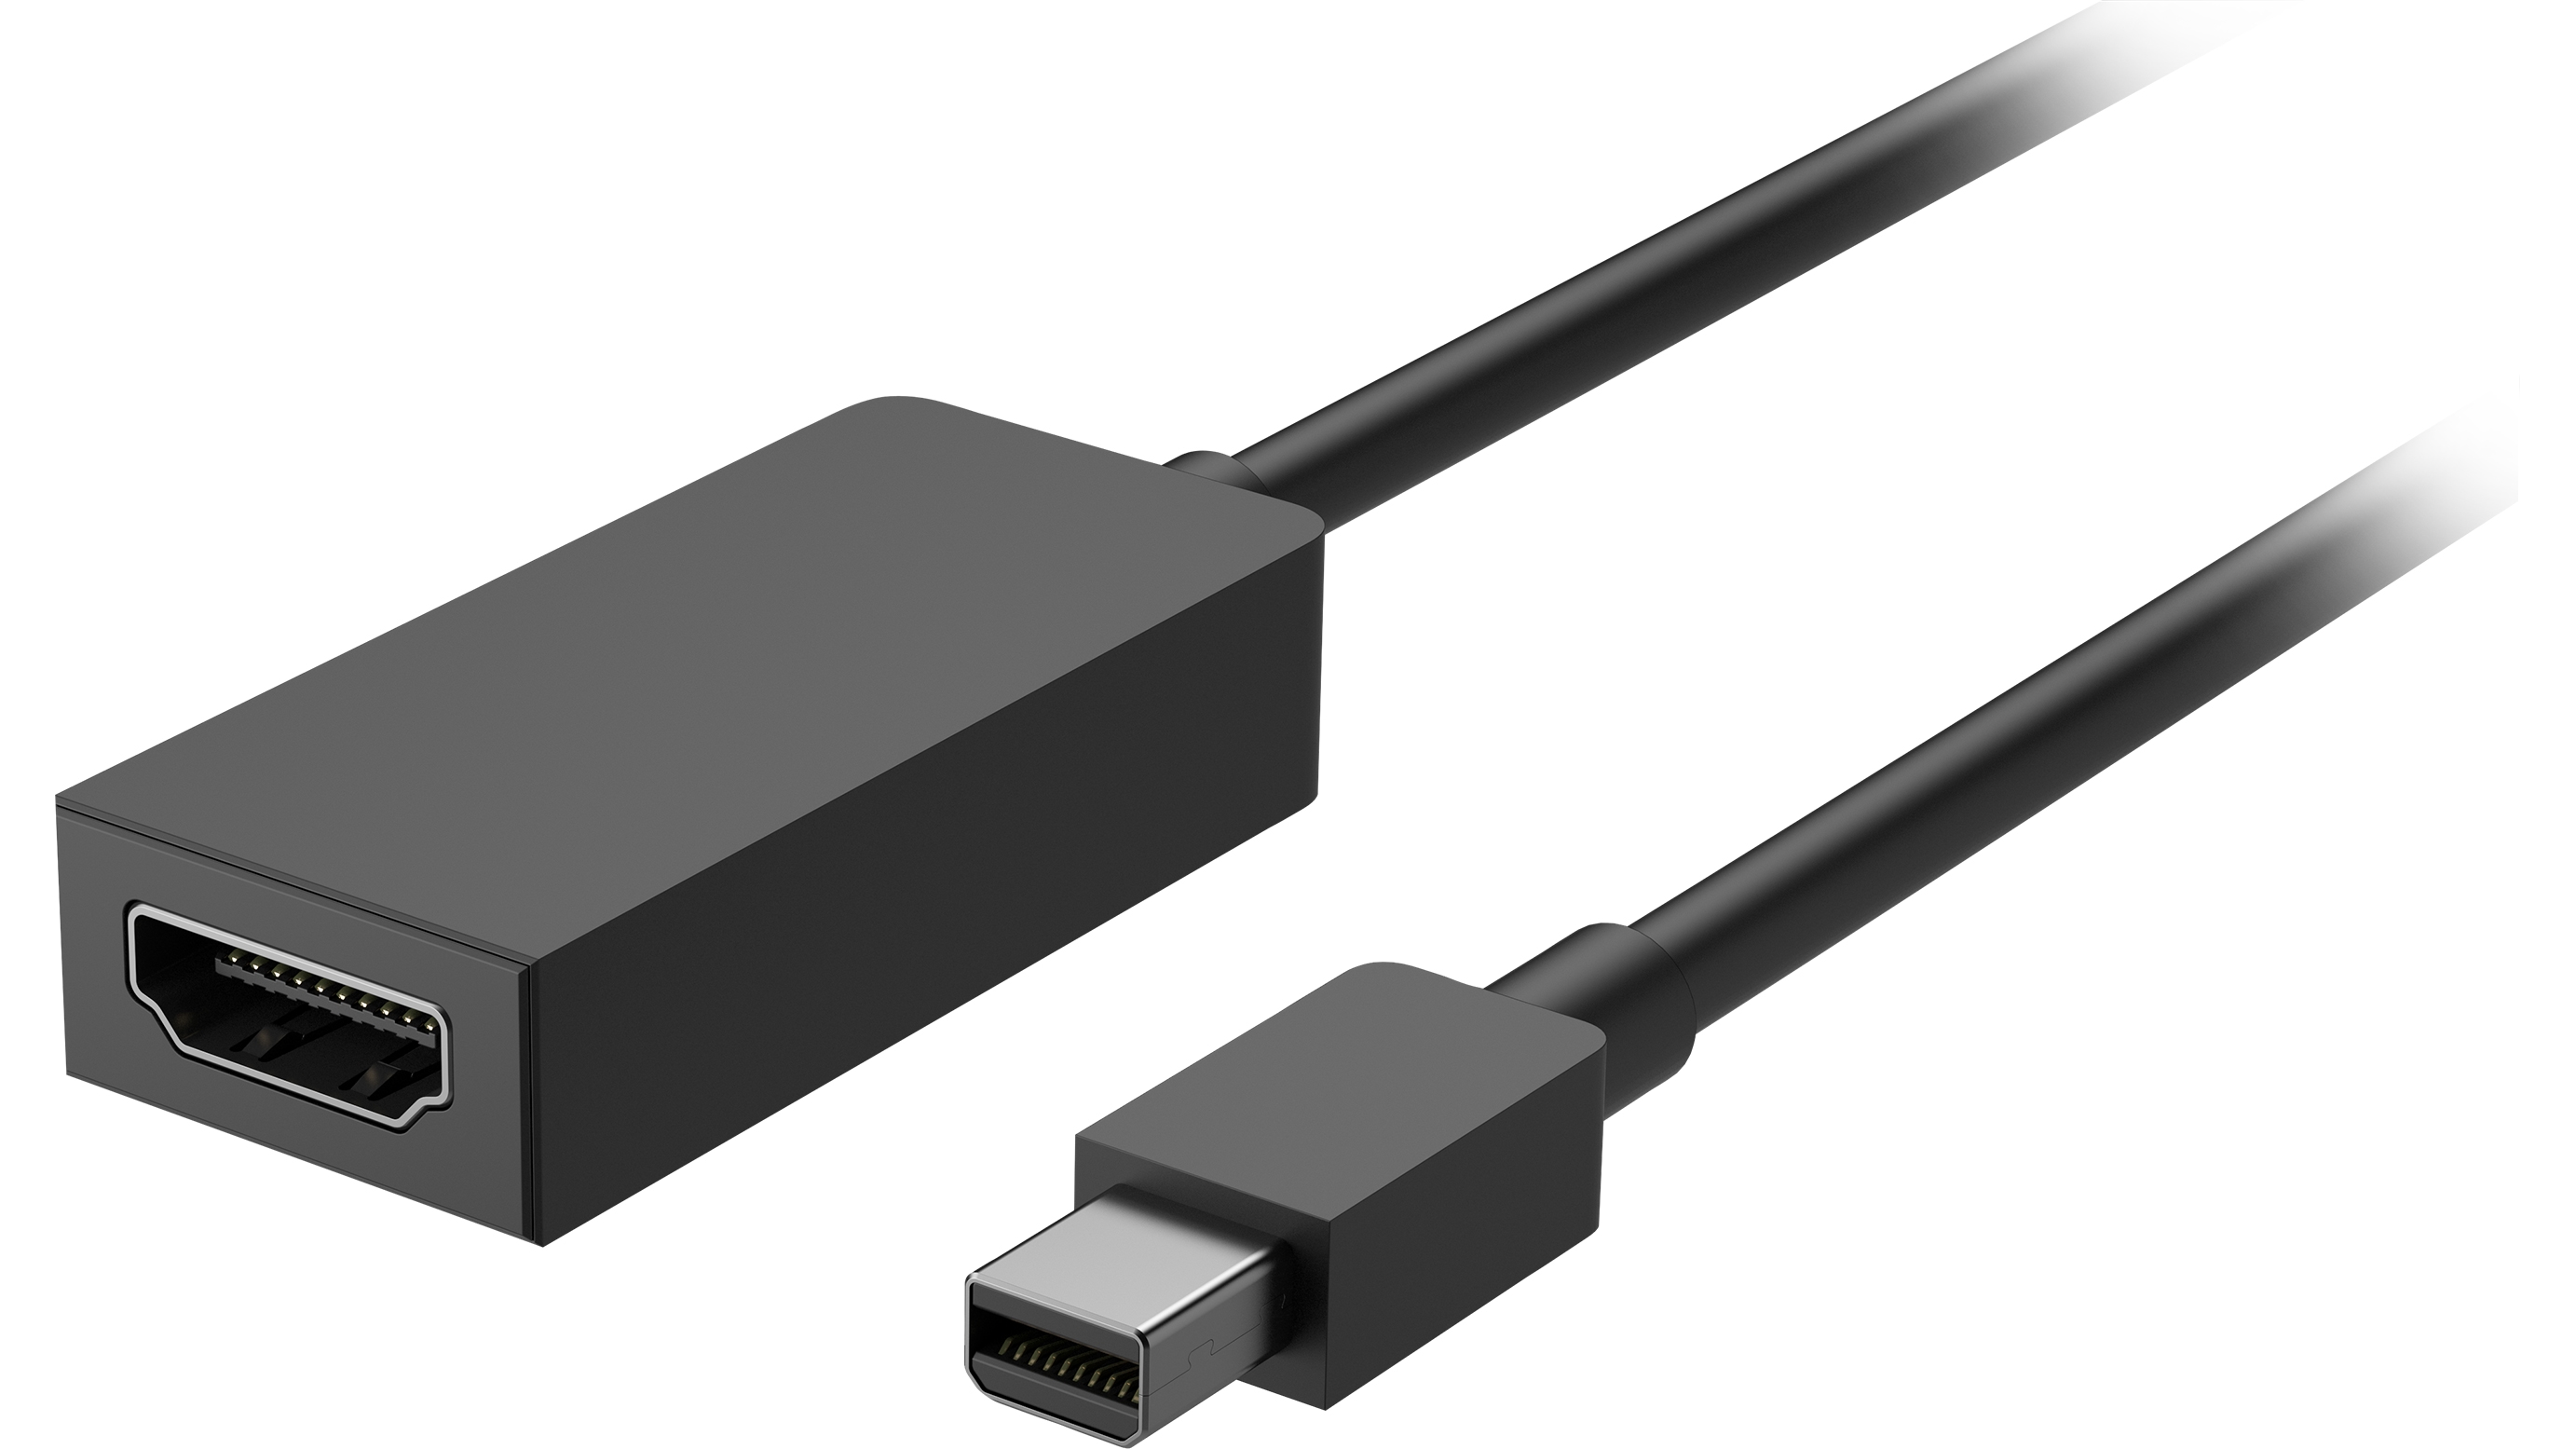 Adaptateur displayport vers HDMI, m/f